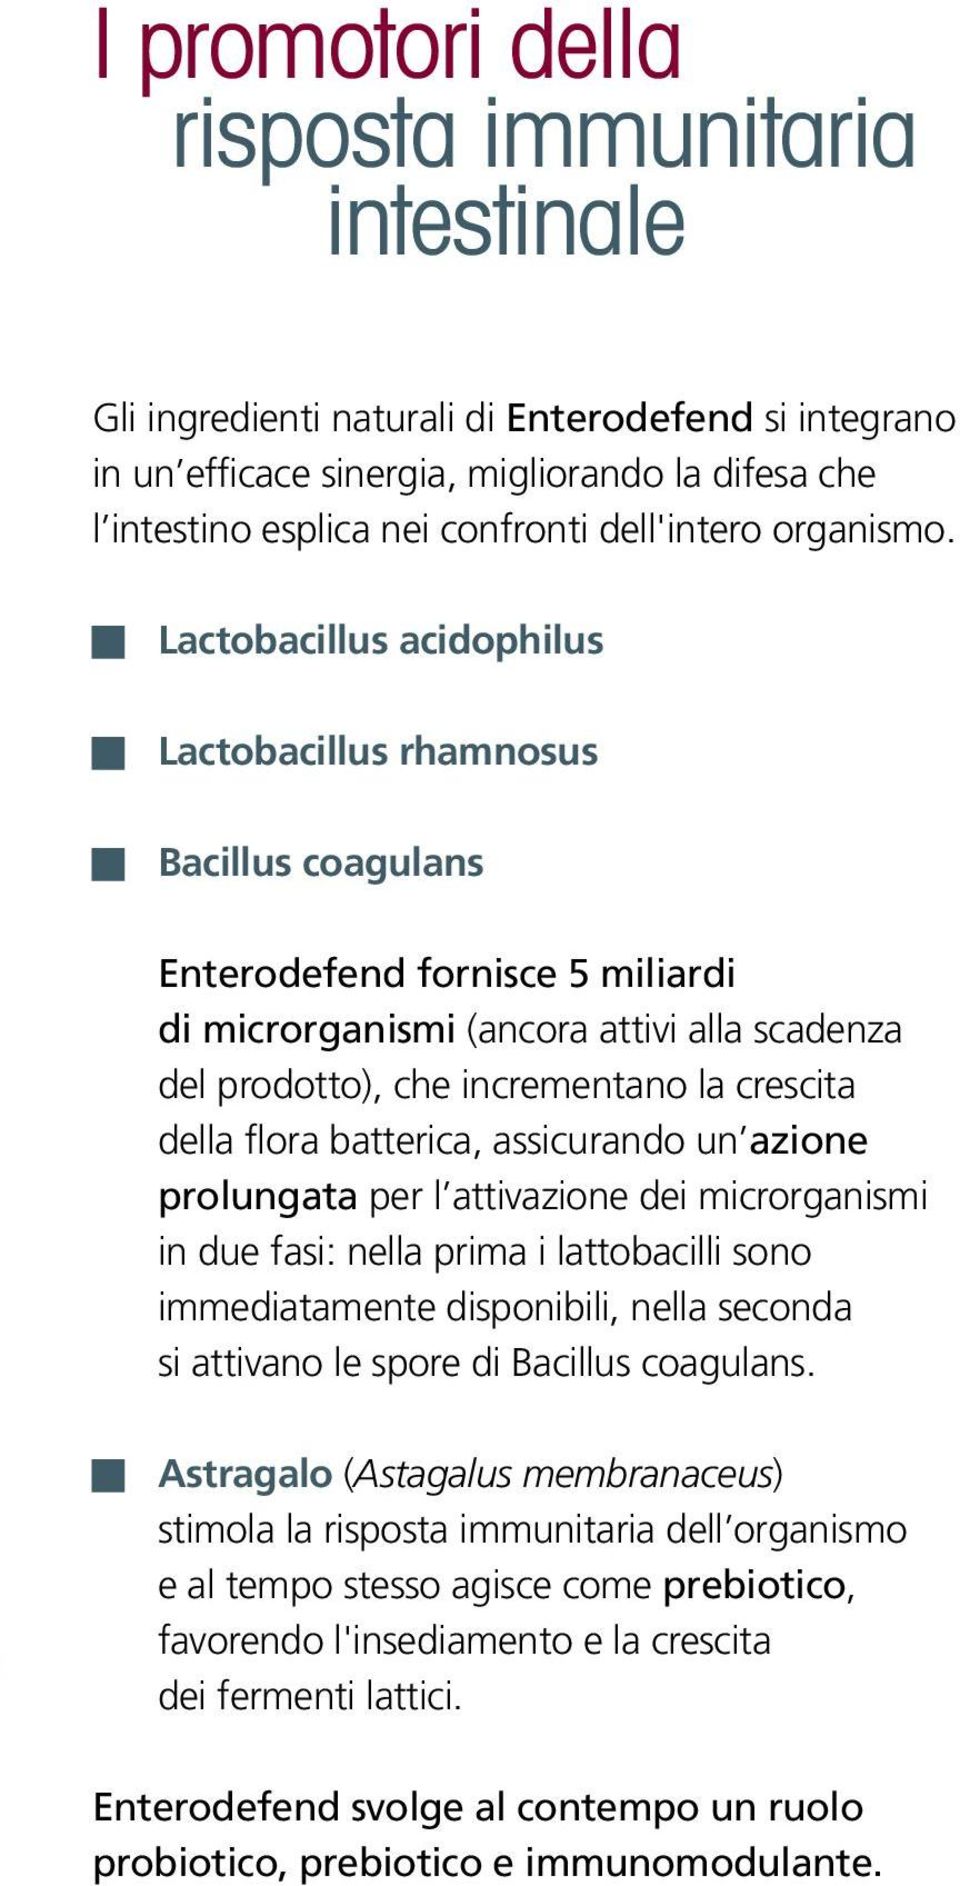 Lactobacillus acidophilus Lactobacillus rhamnosus Bacillus coagulans Enterodefend fornisce 5 miliardi di microrganismi (ancora attivi alla scadenza del prodotto), che incrementano la crescita della